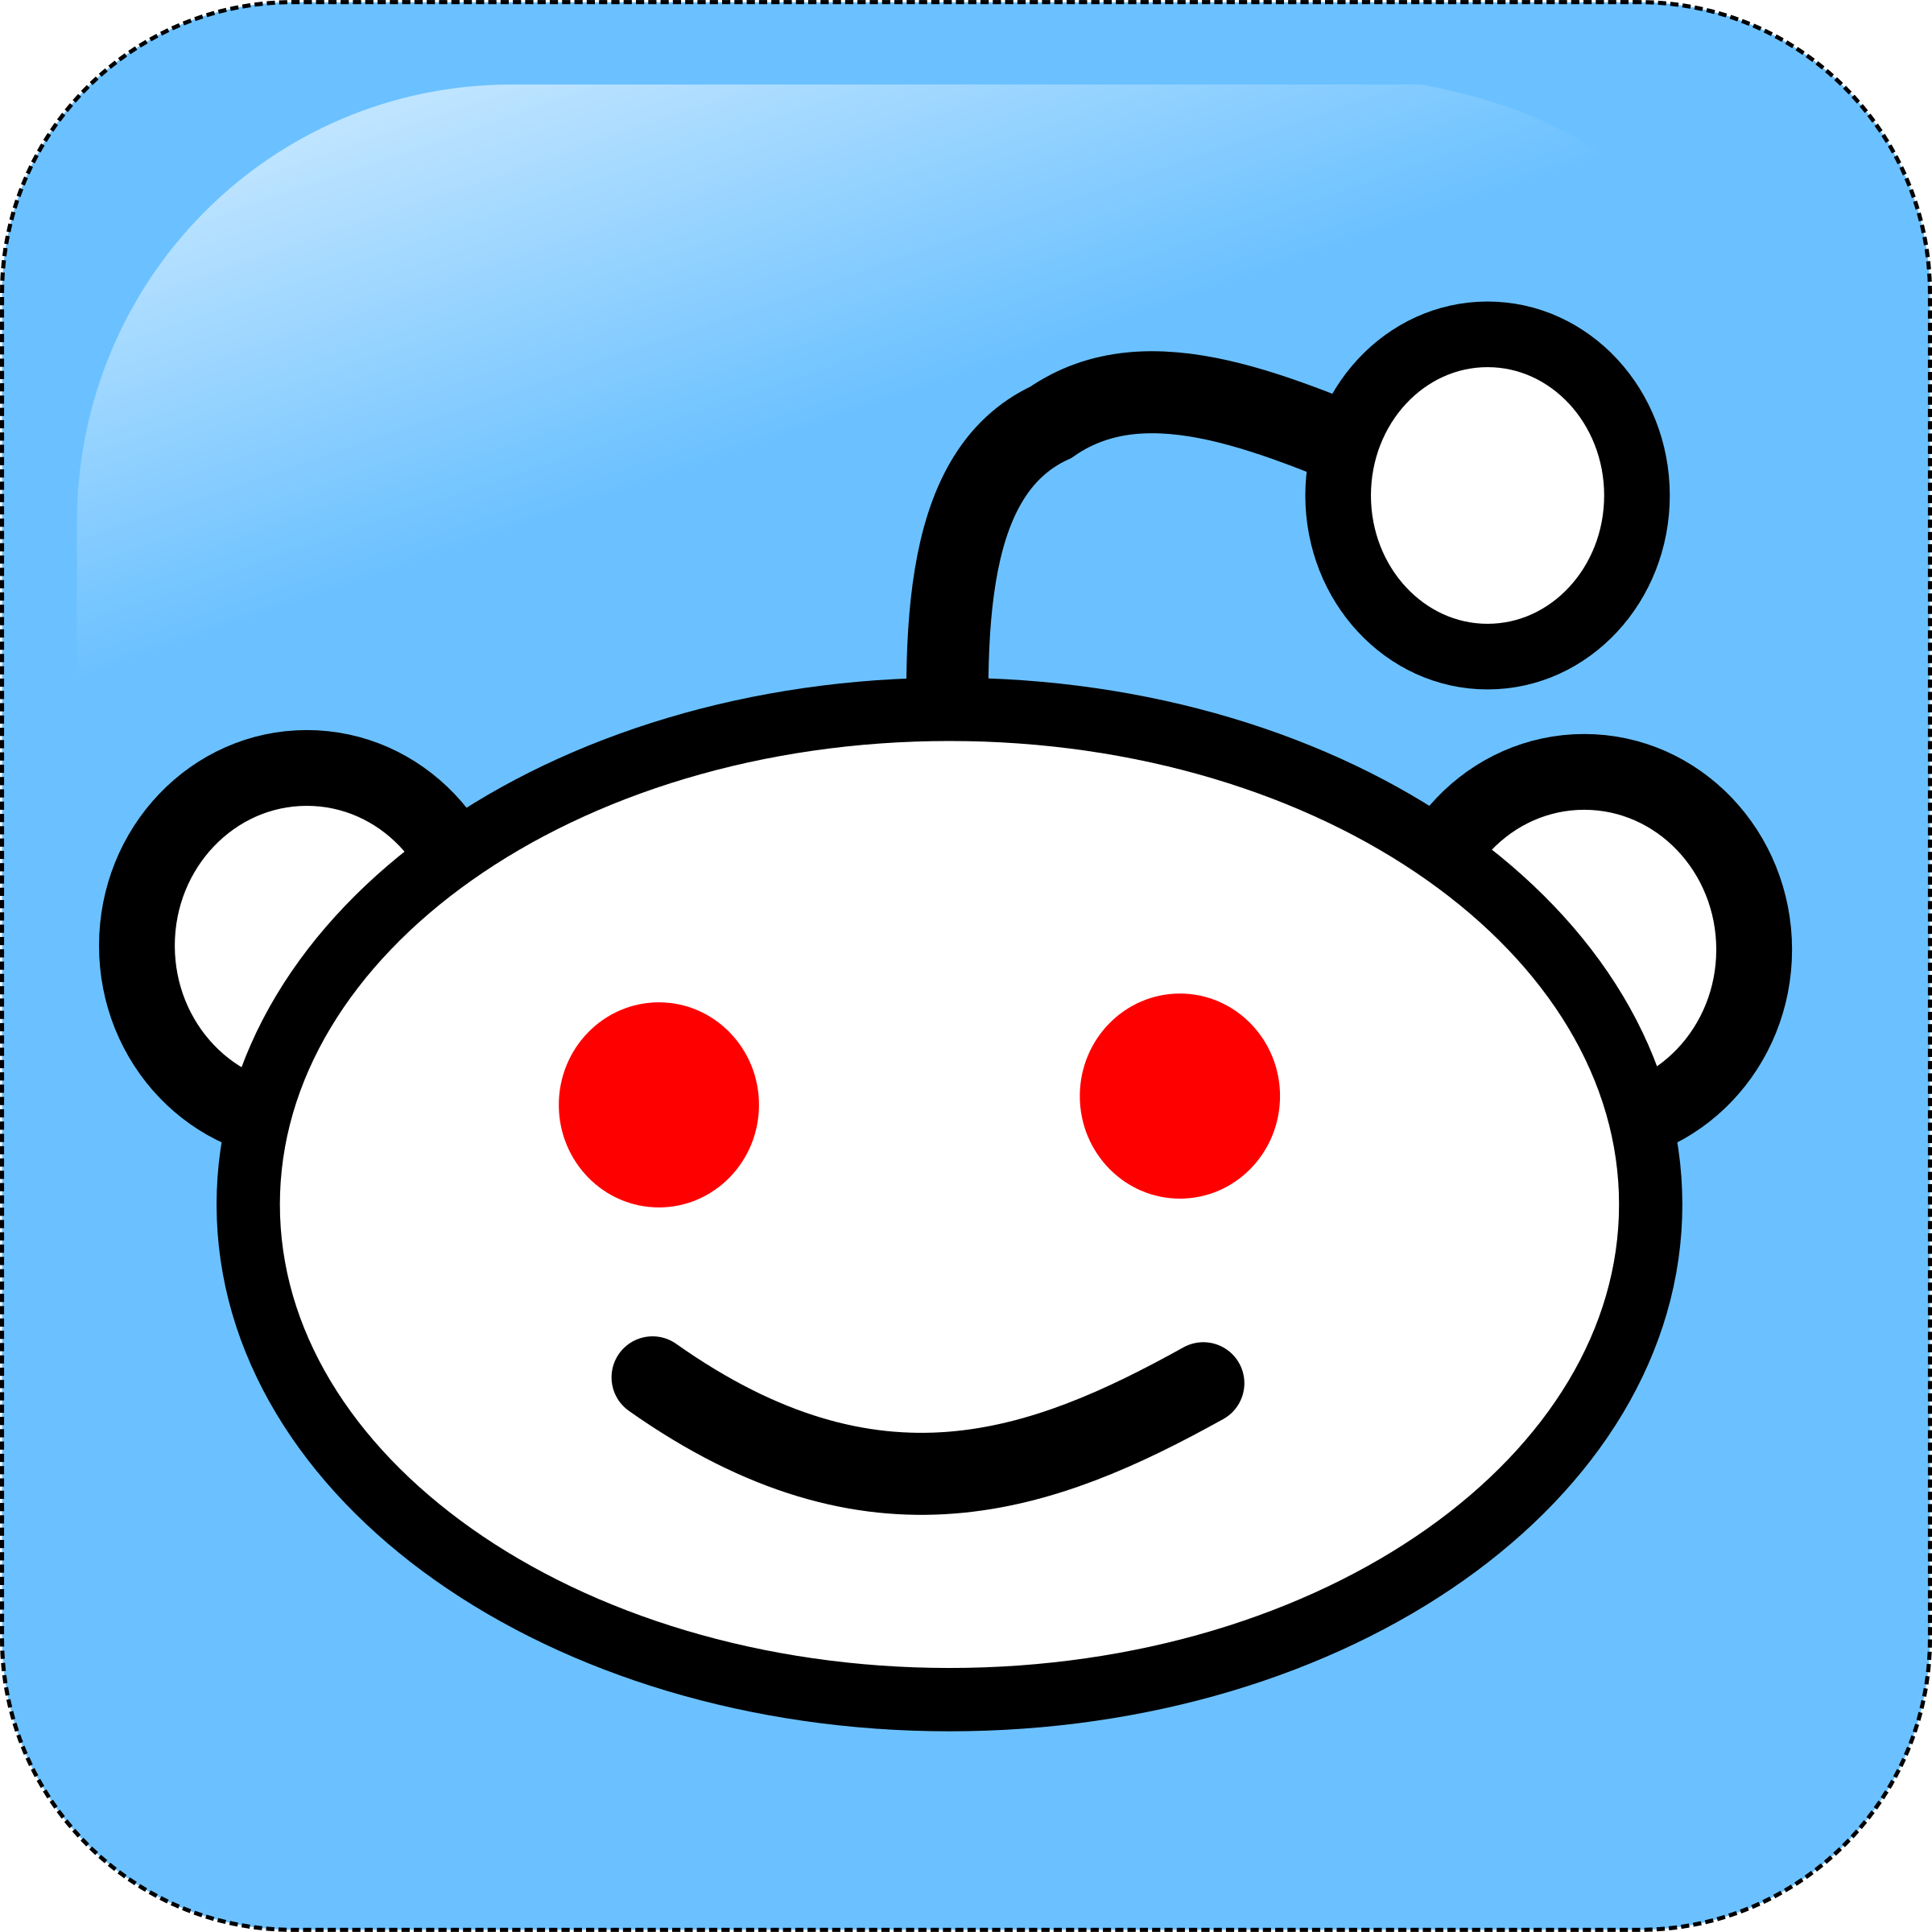 Reddit Logo - Reddit Logo PNG Transparent & SVG Vector - Freebie Supply